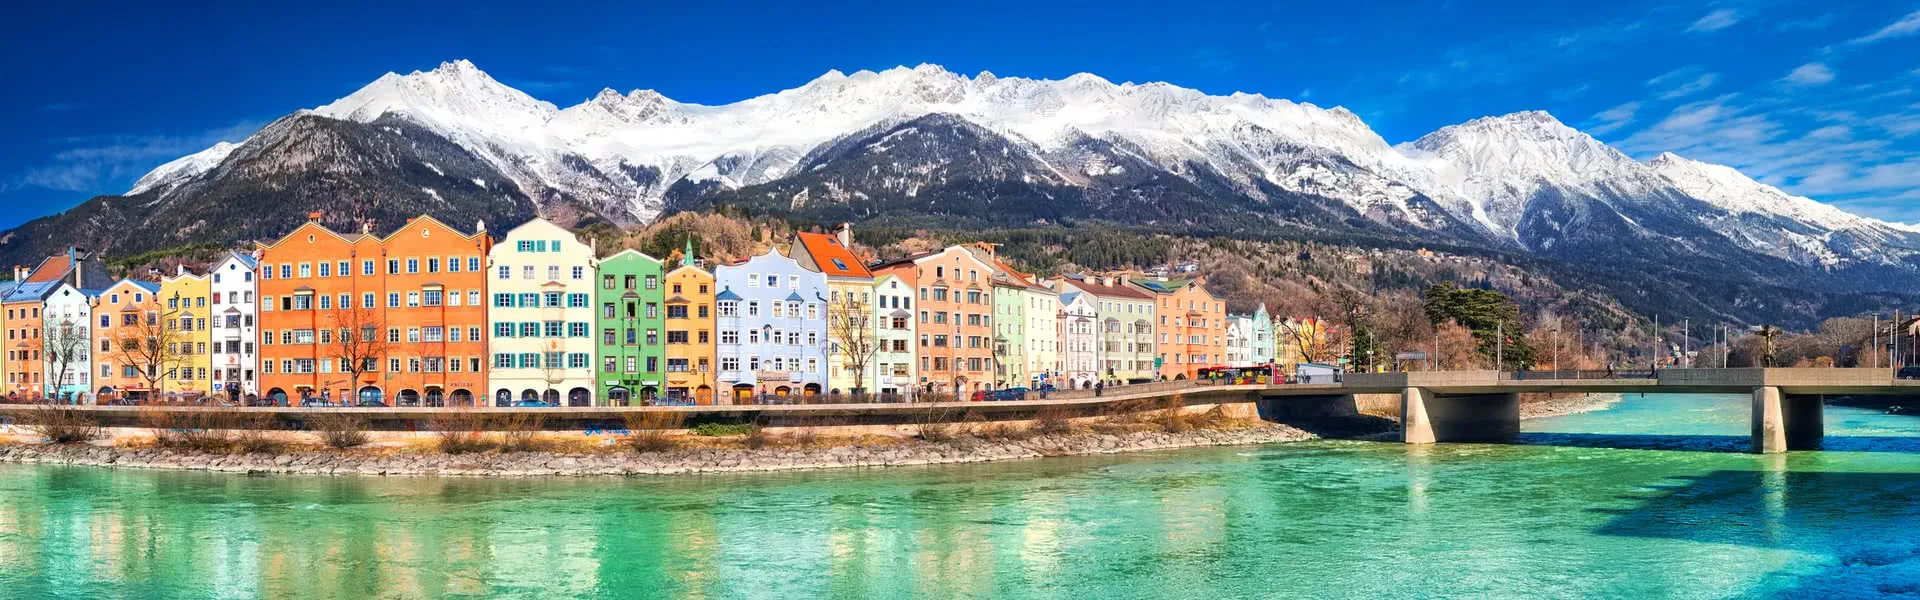 Innsbruck panorama image